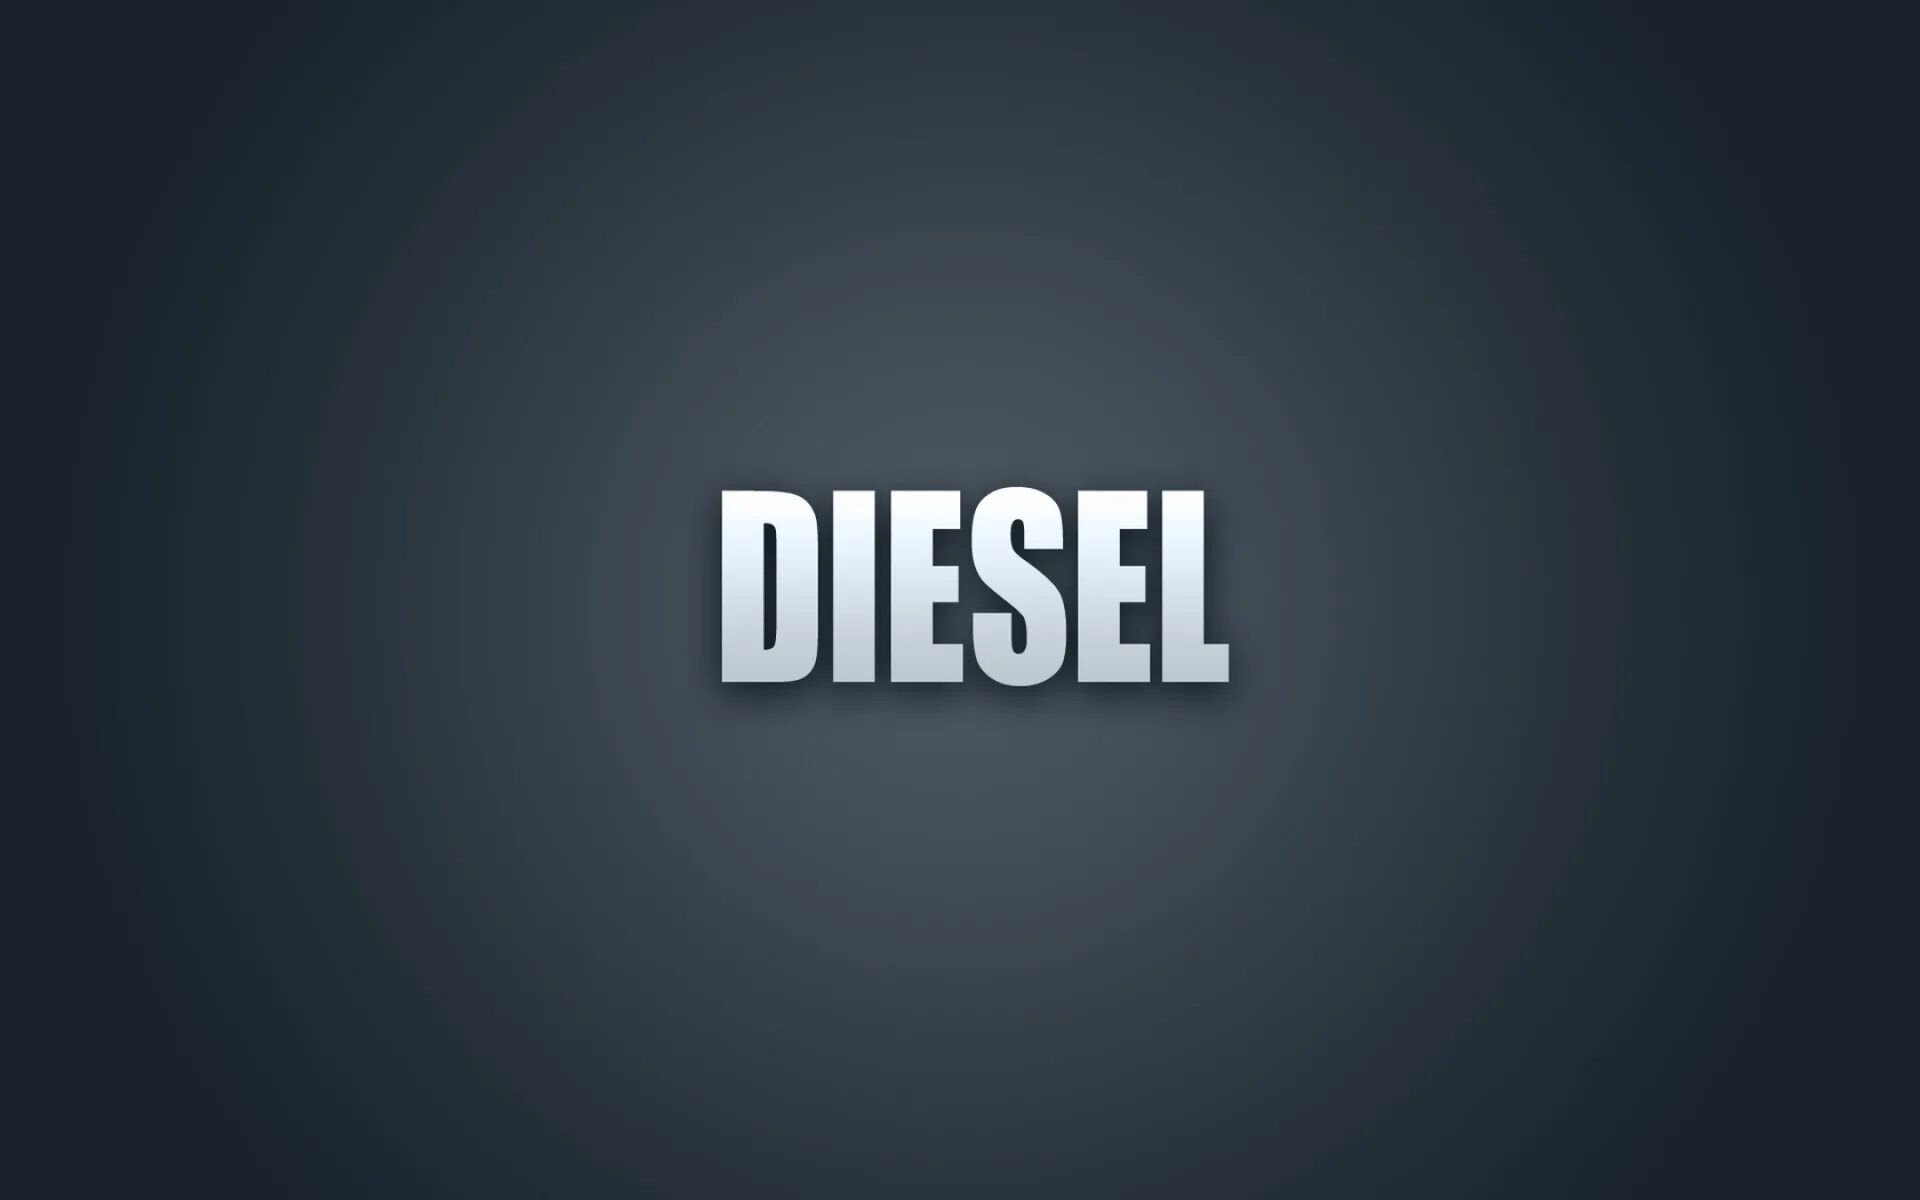 Эмблема дизель. Дизель логотип бренда. Diesel надпись. Diesel одежда логотип. Логотип дизель